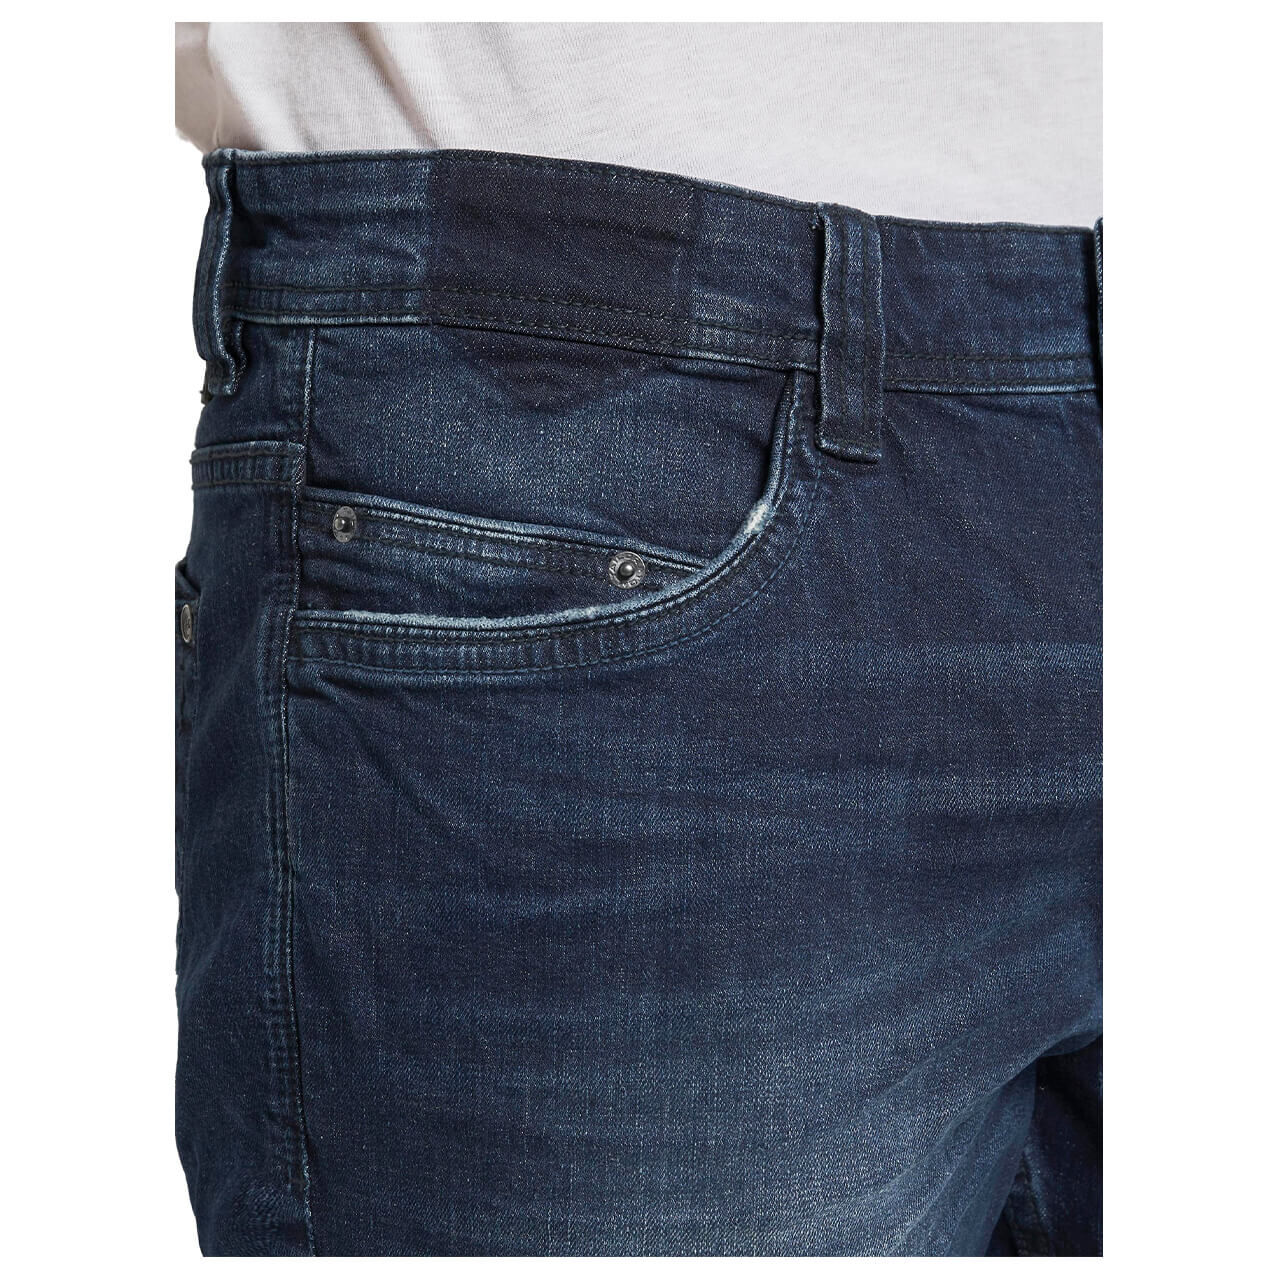 Tom Tailor Jeans Josh Bermuda für Herren in Mittelblau angewaschen, FarbNr.: 10280